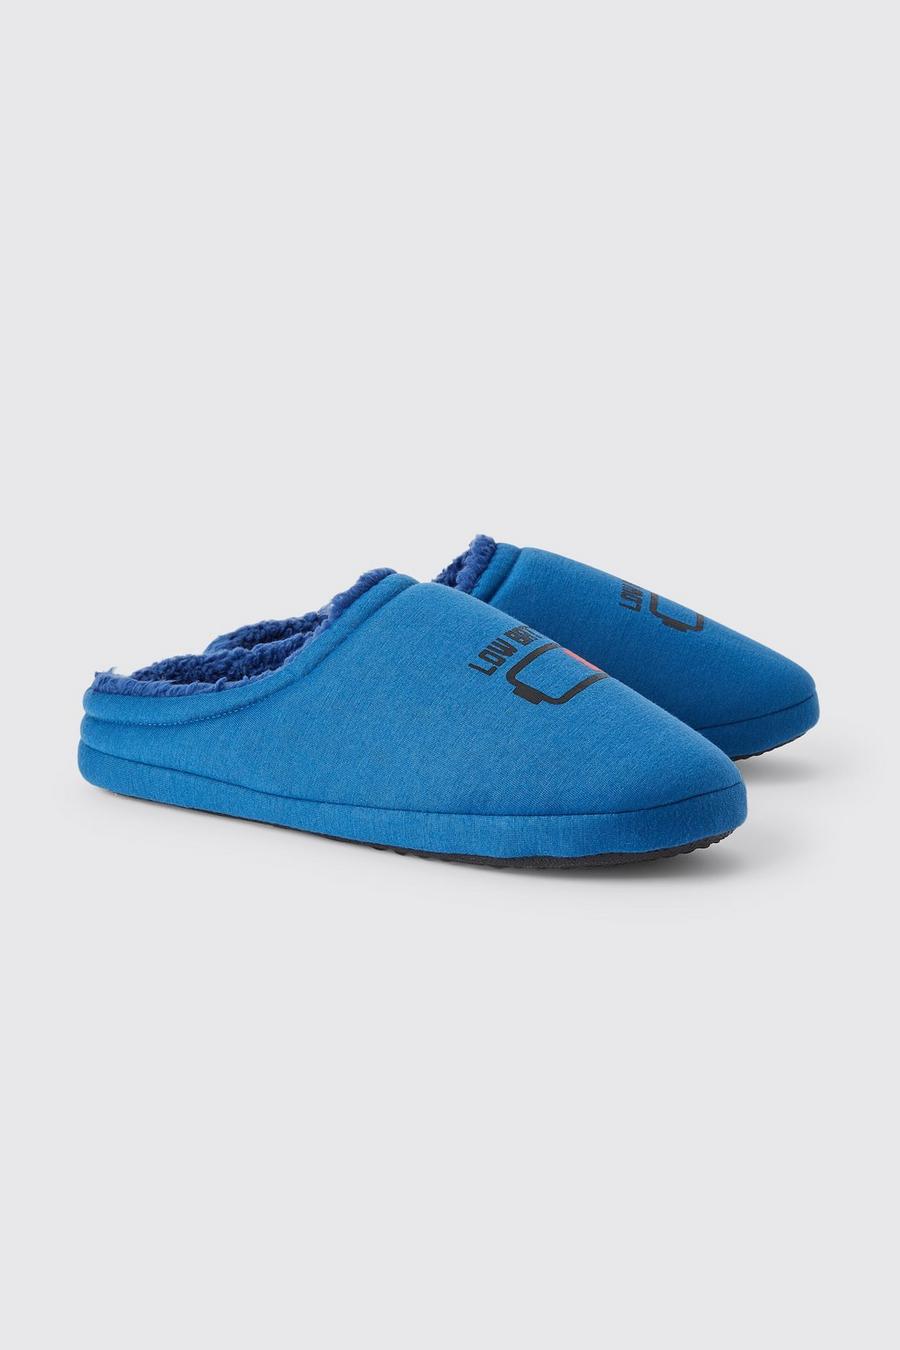 Blue zapatillas de running Salomon pie normal talla 38 marrones mejor valoradas